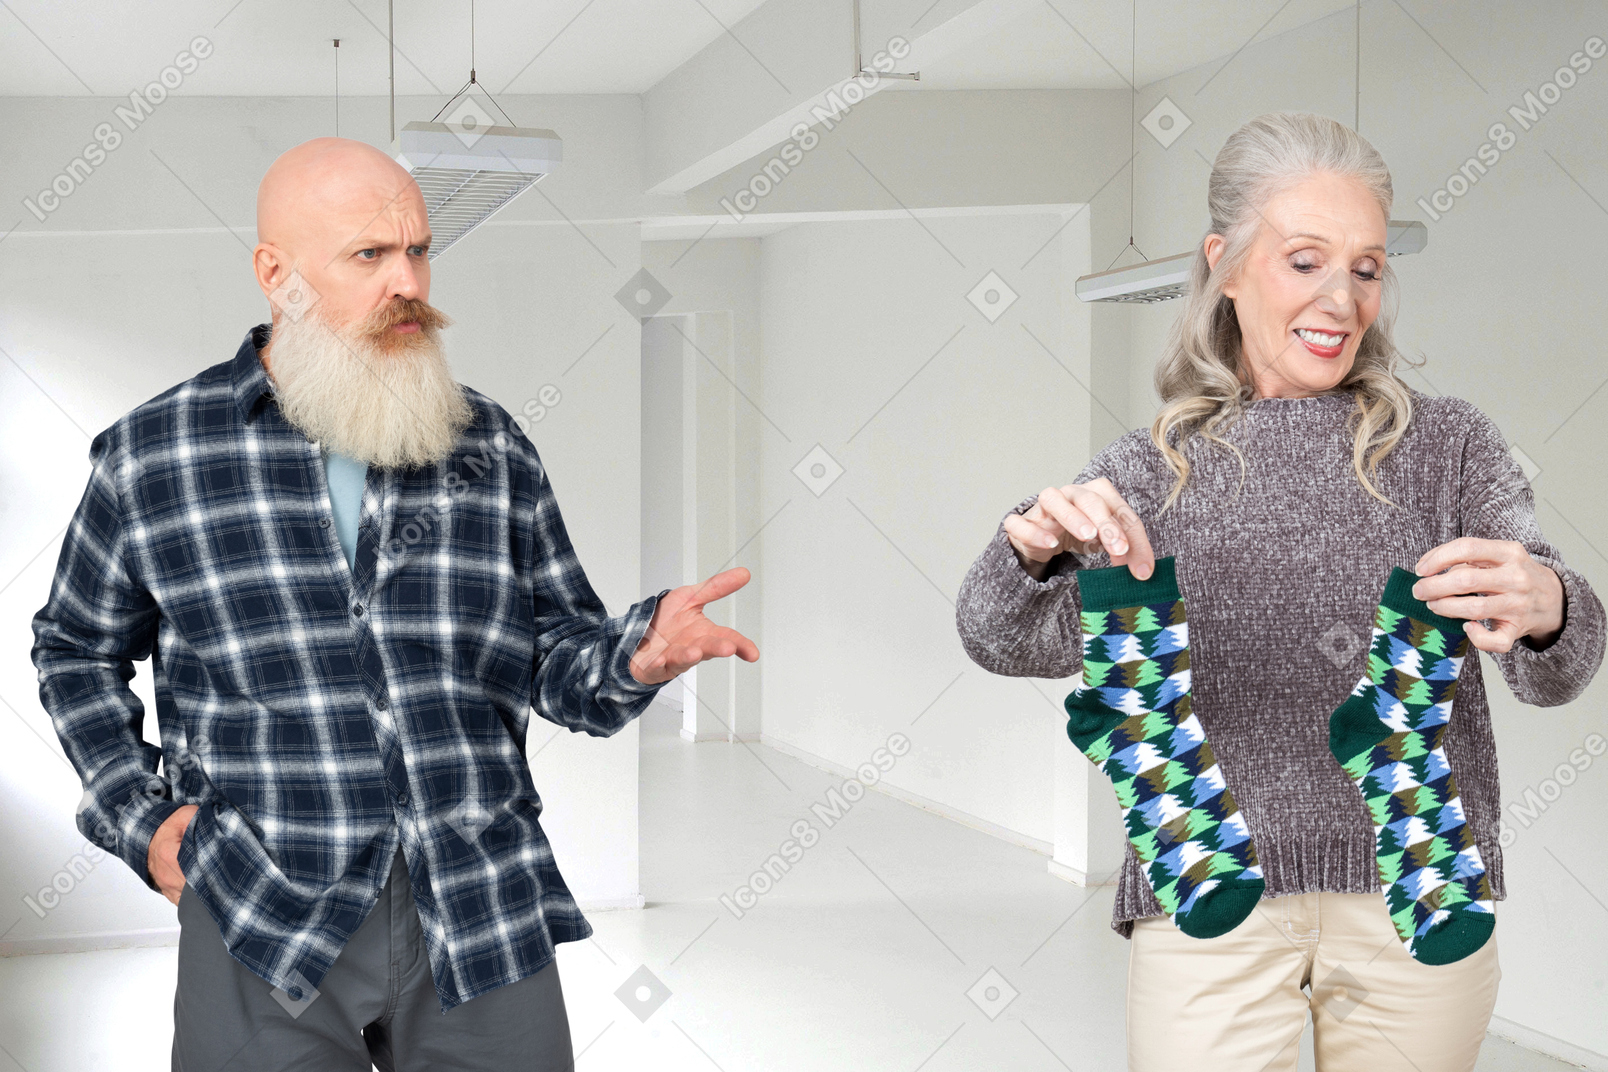 Лысый старик с седой бородой с удивлением смотрит на старушку, держа в руках пару зеленых носков